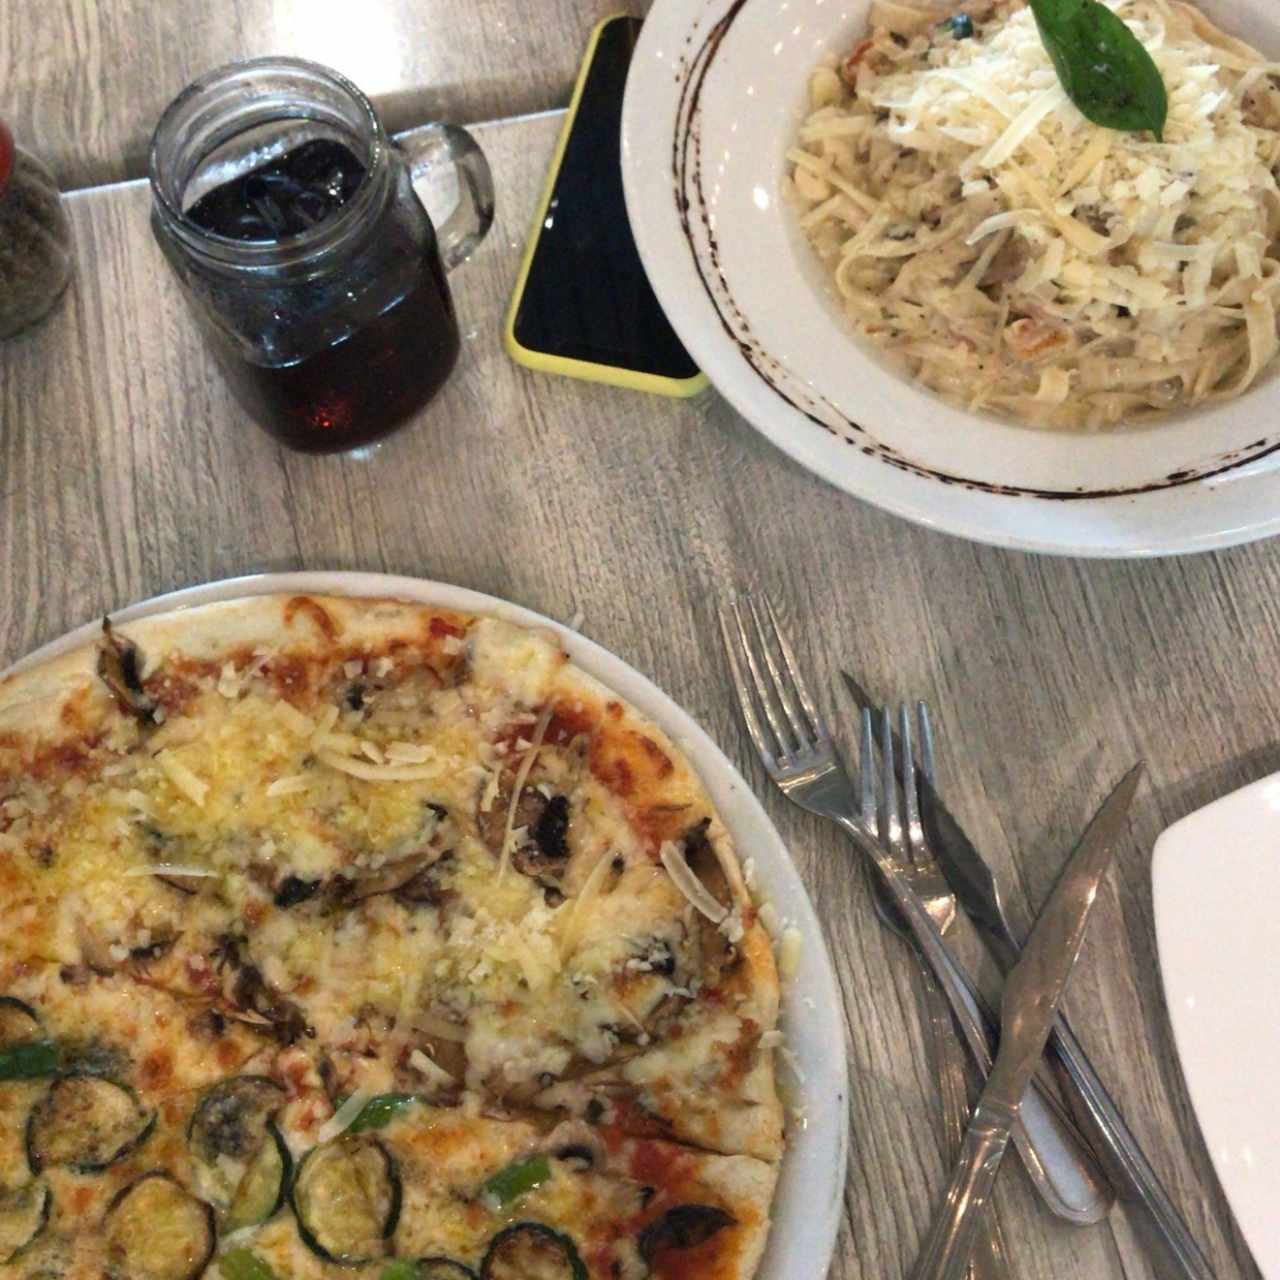 pasta “arma tu plato” y pizza mitad de aceite de trufa y hongos y mktad de zucchini, esparragos y queso azul.